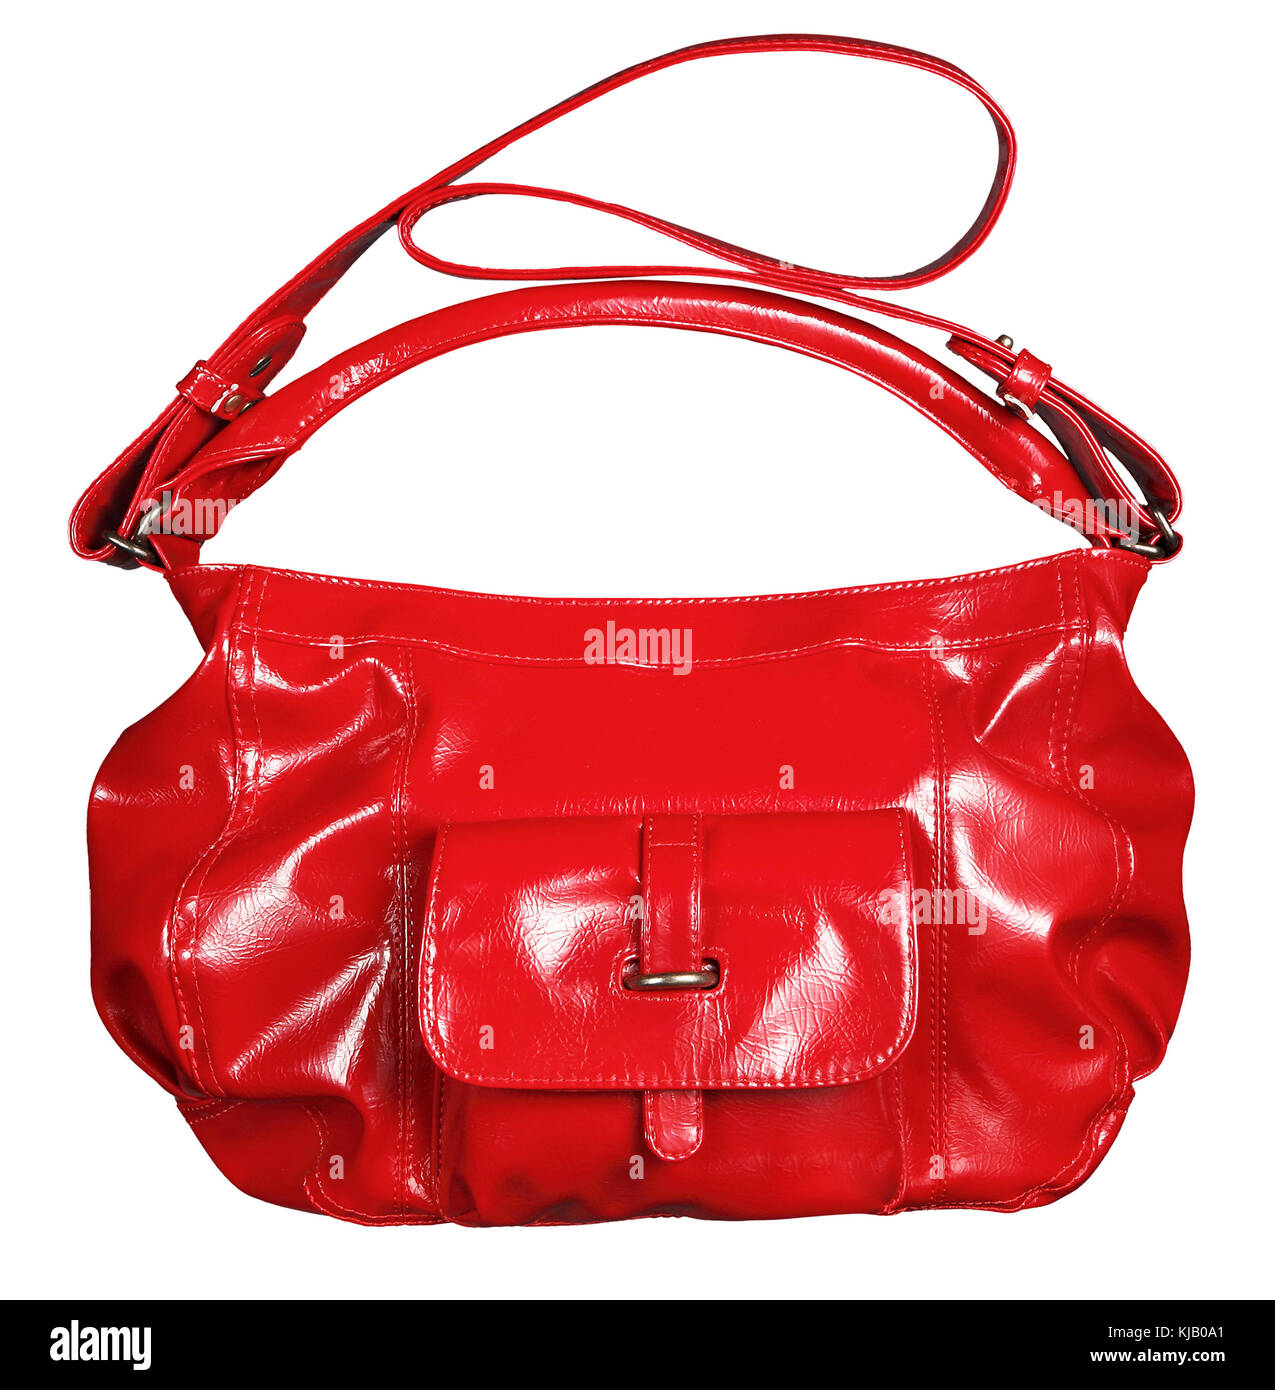 Brevet brillant rouge brillant sac à main en cuir avec double porter et bretelles pour un élégant accessoire de mode féminine isolated on white Banque D'Images